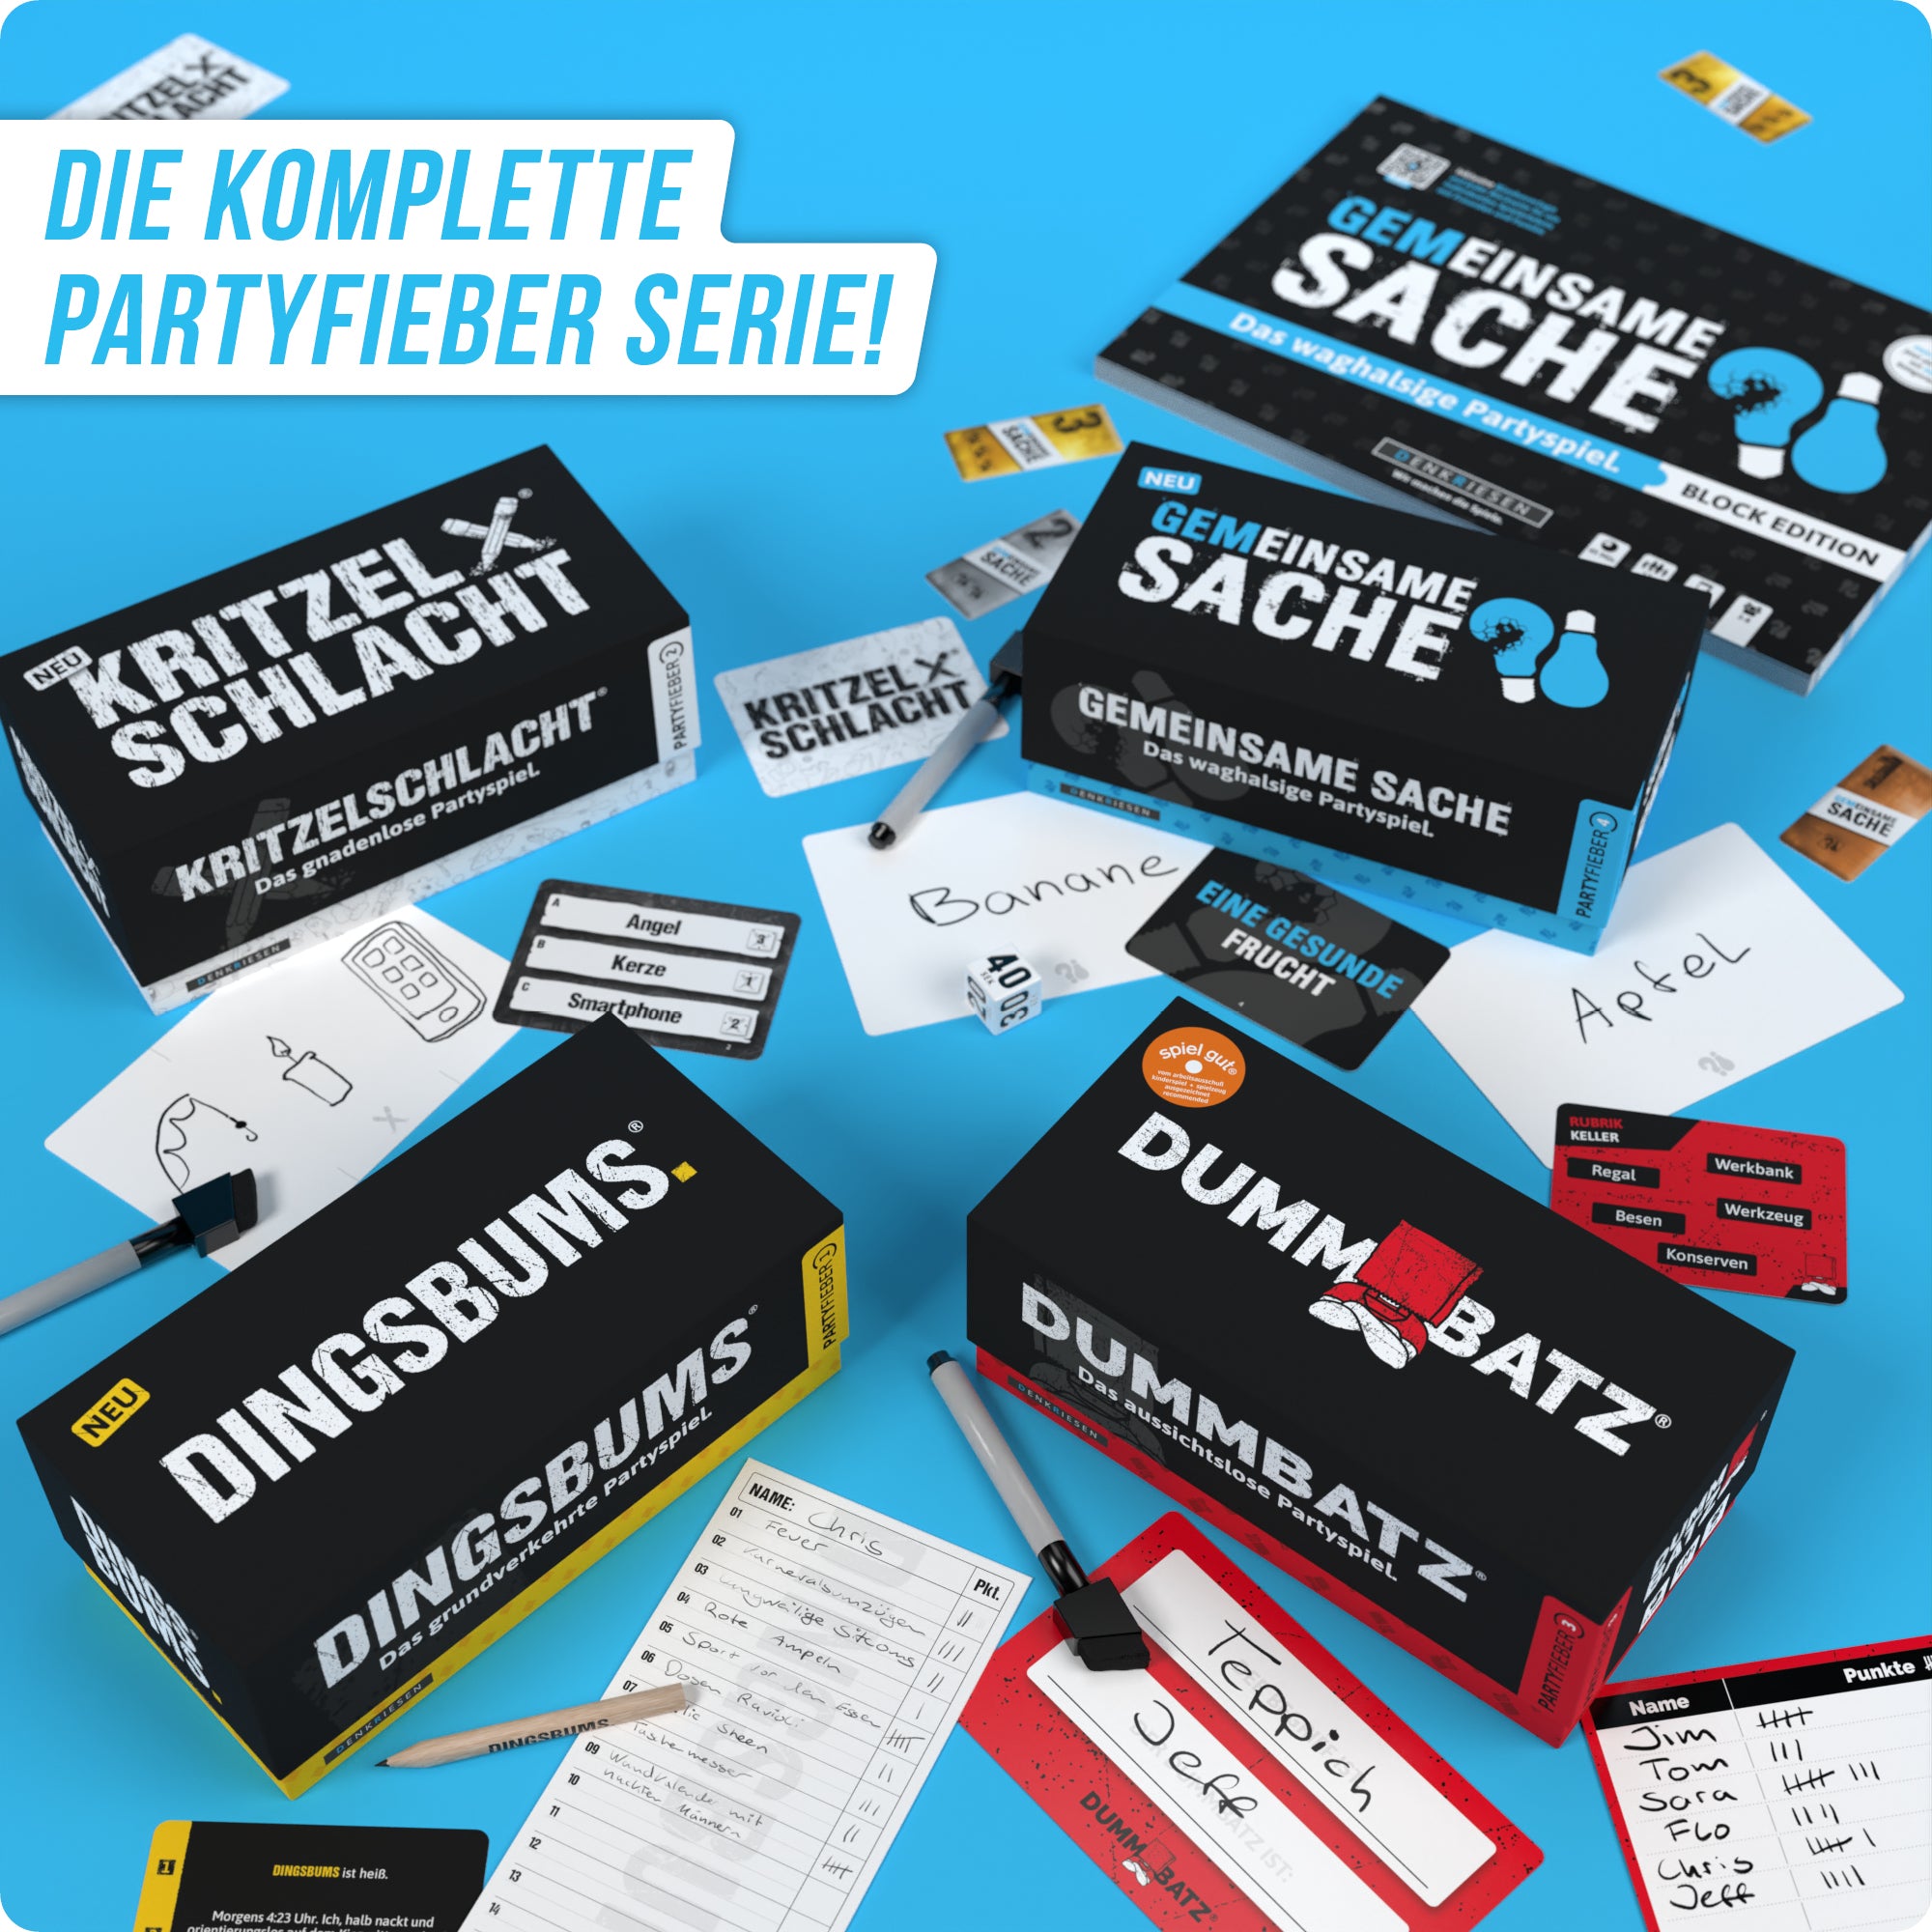 PARTYFIEBER - GEMEINSAME SACHE "Das waghalsige Partyspiel"